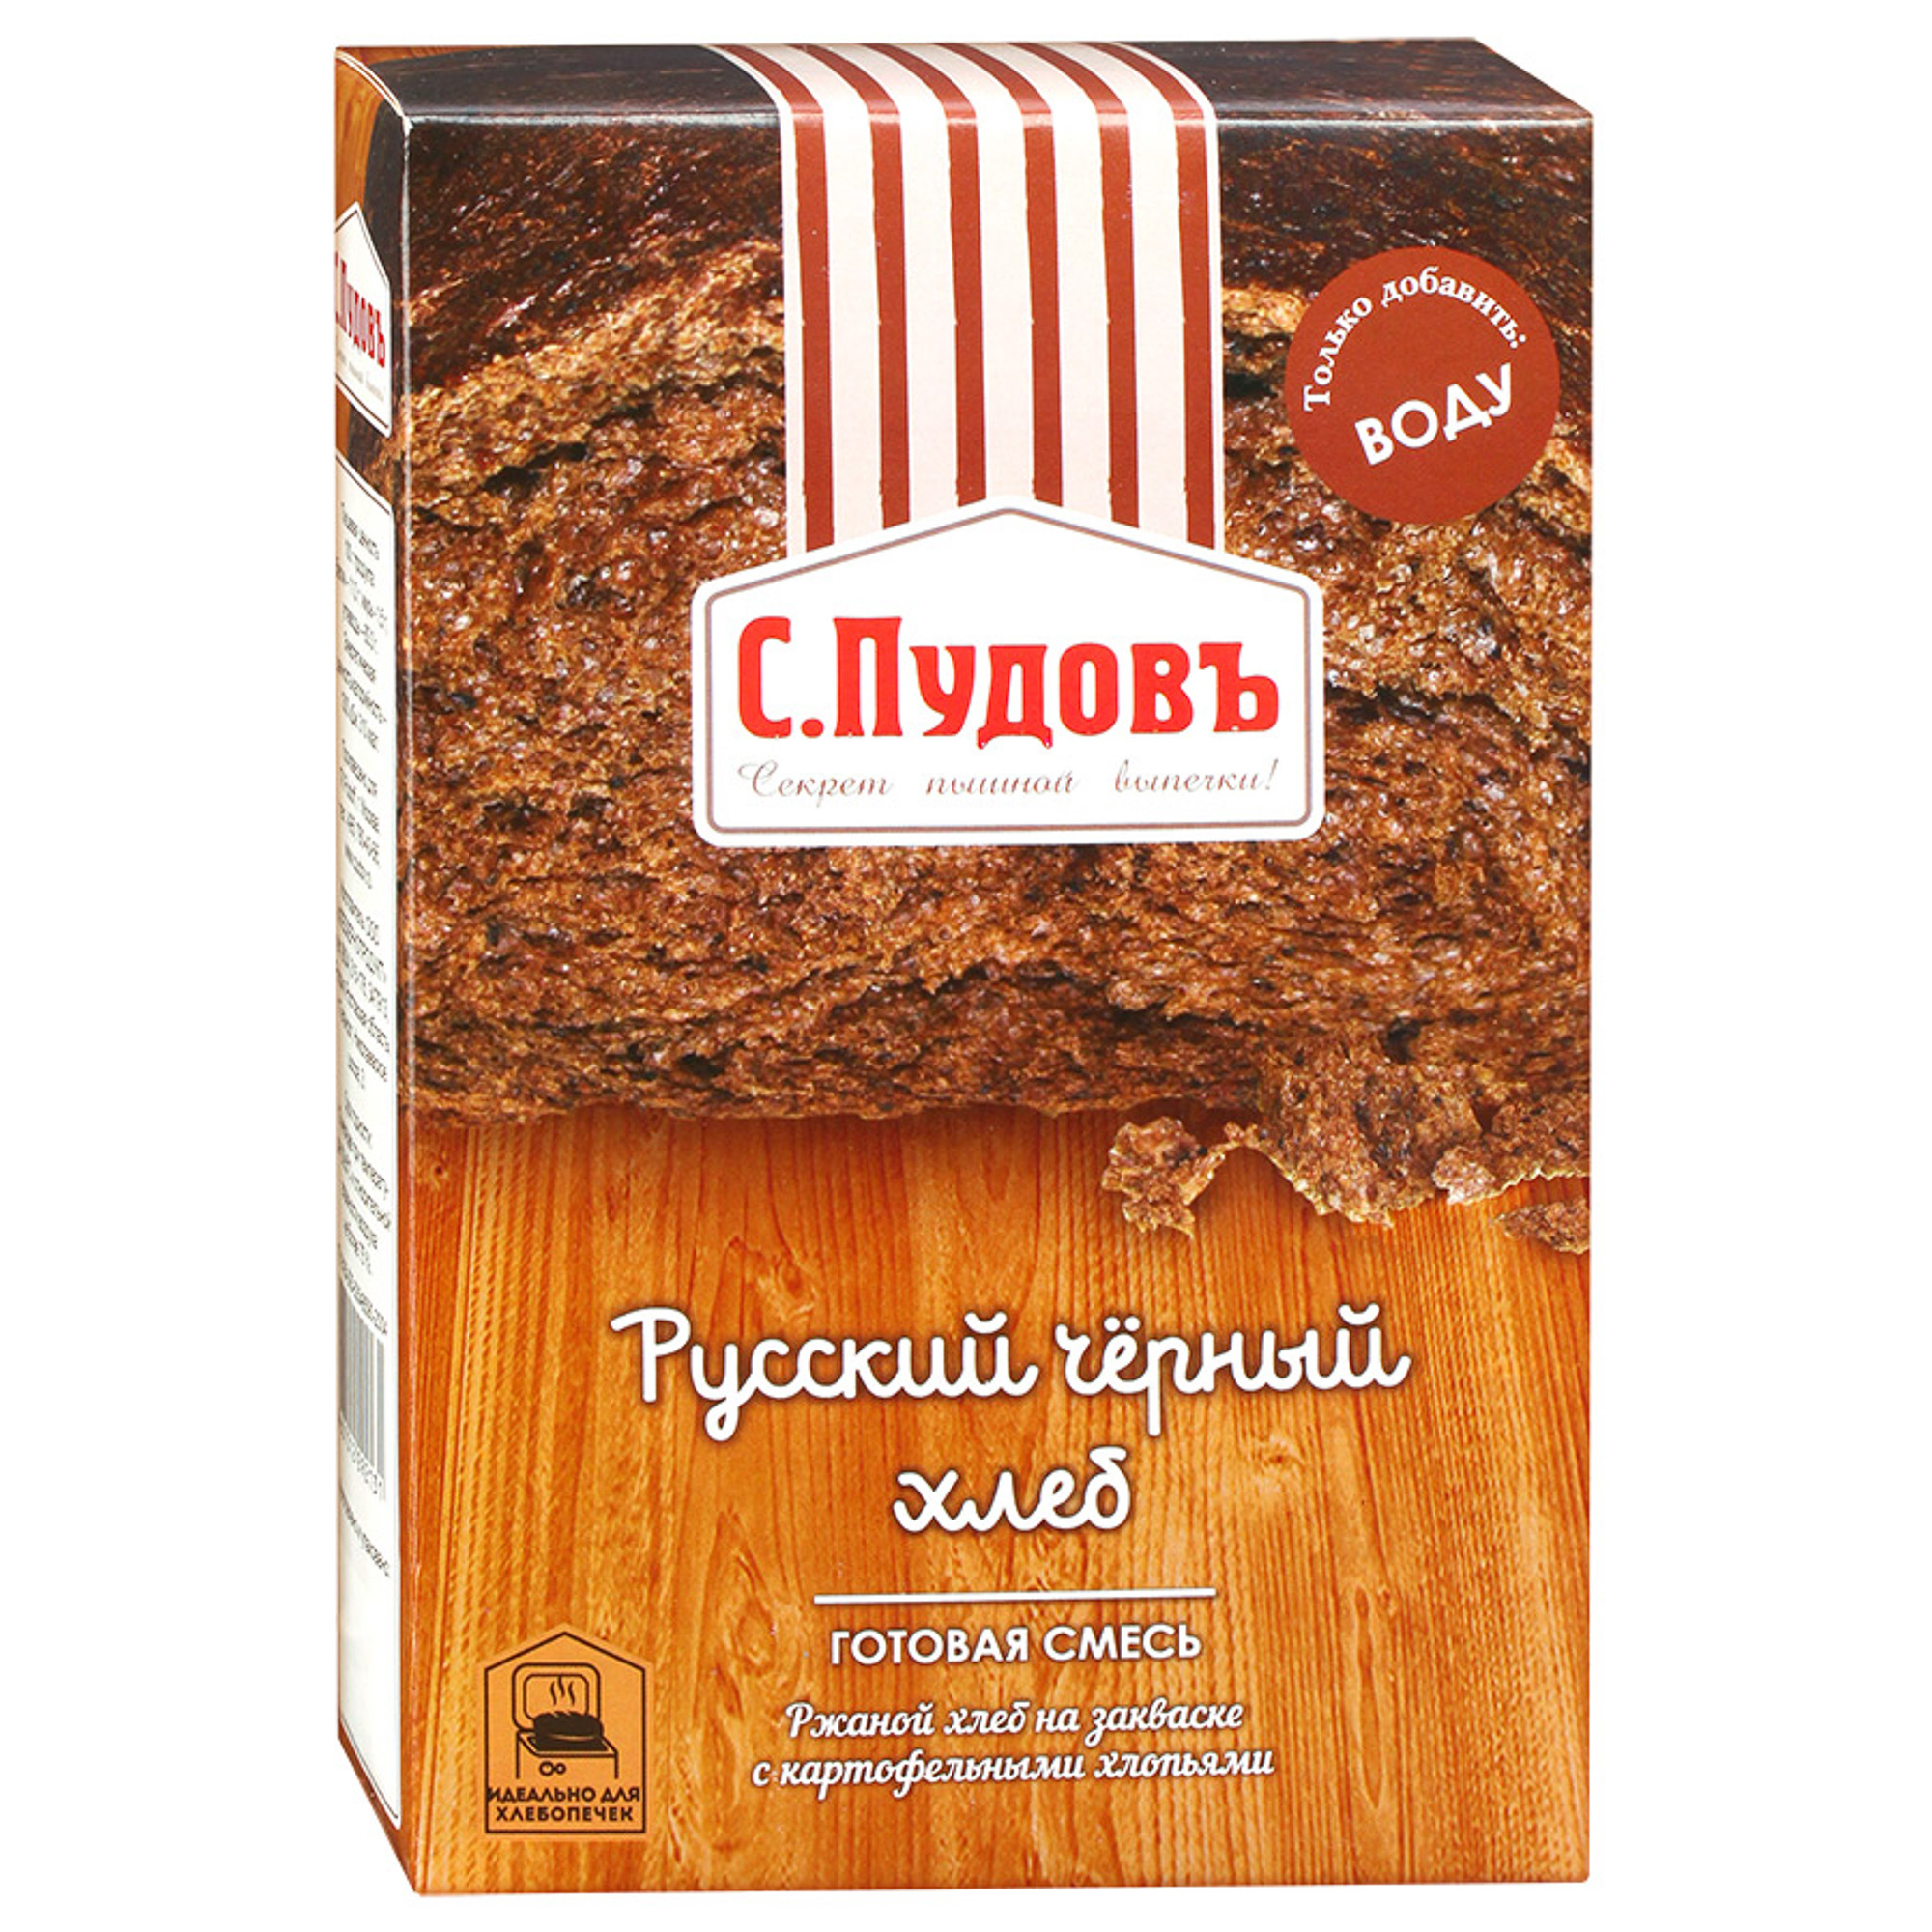 Хлебная смесь С.Пудовъ Русский черный хлеб 500 г